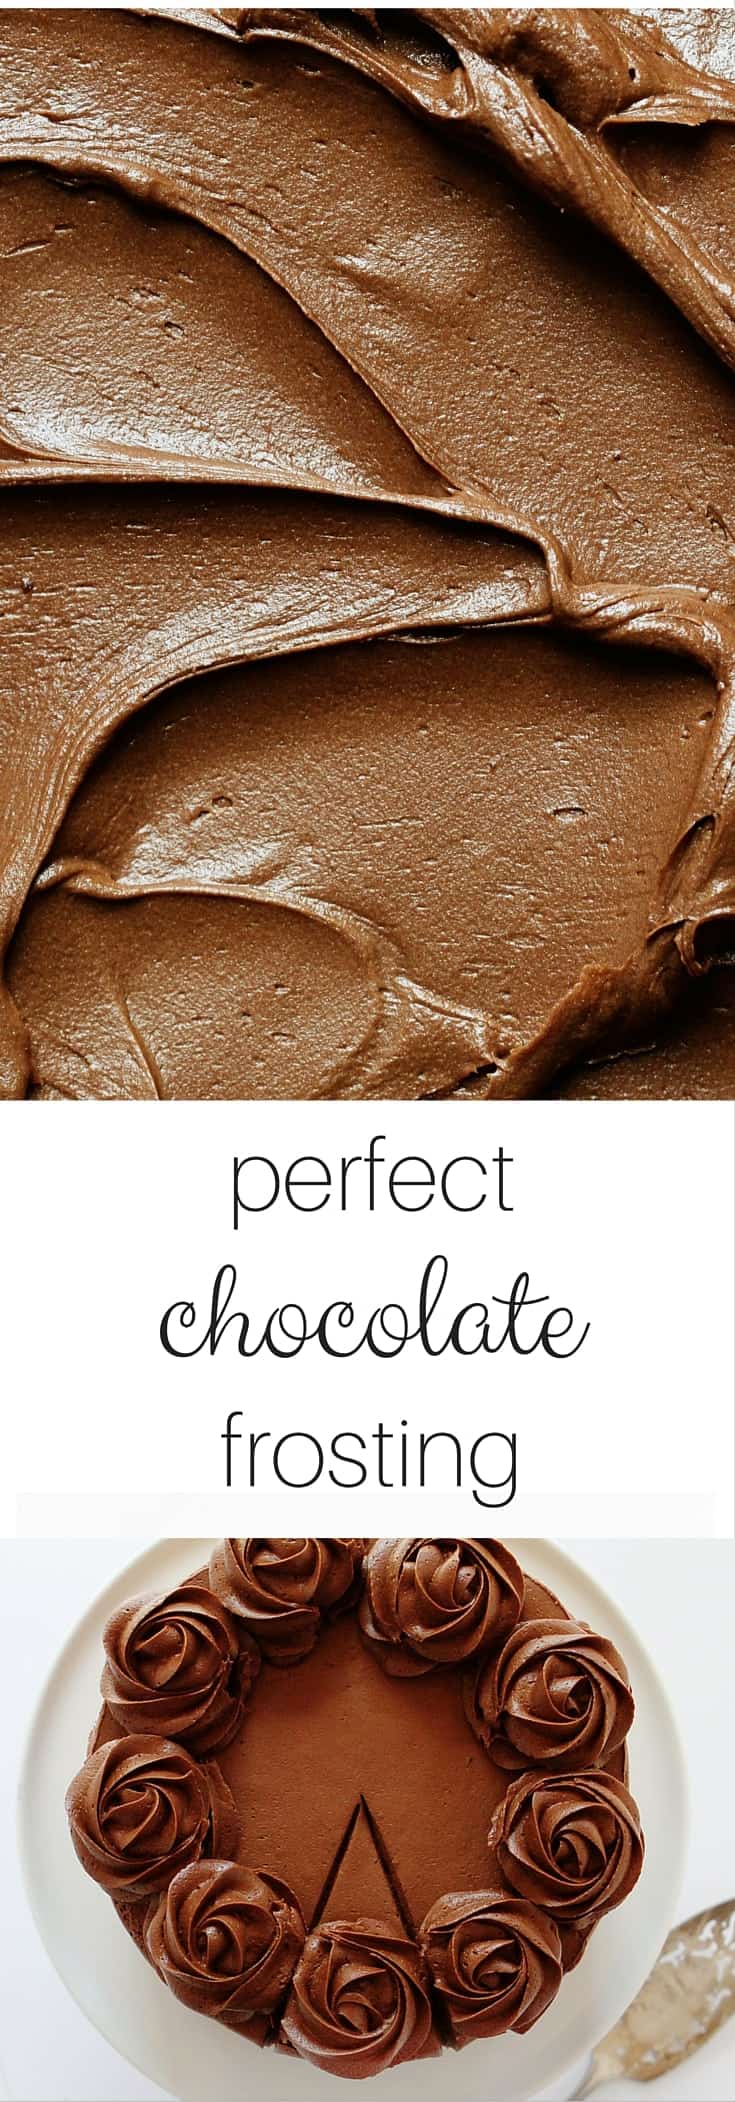 完美的巧克力糖霜!四种独特而神奇的食谱。这是你唯一需要的巧克力糖霜针!